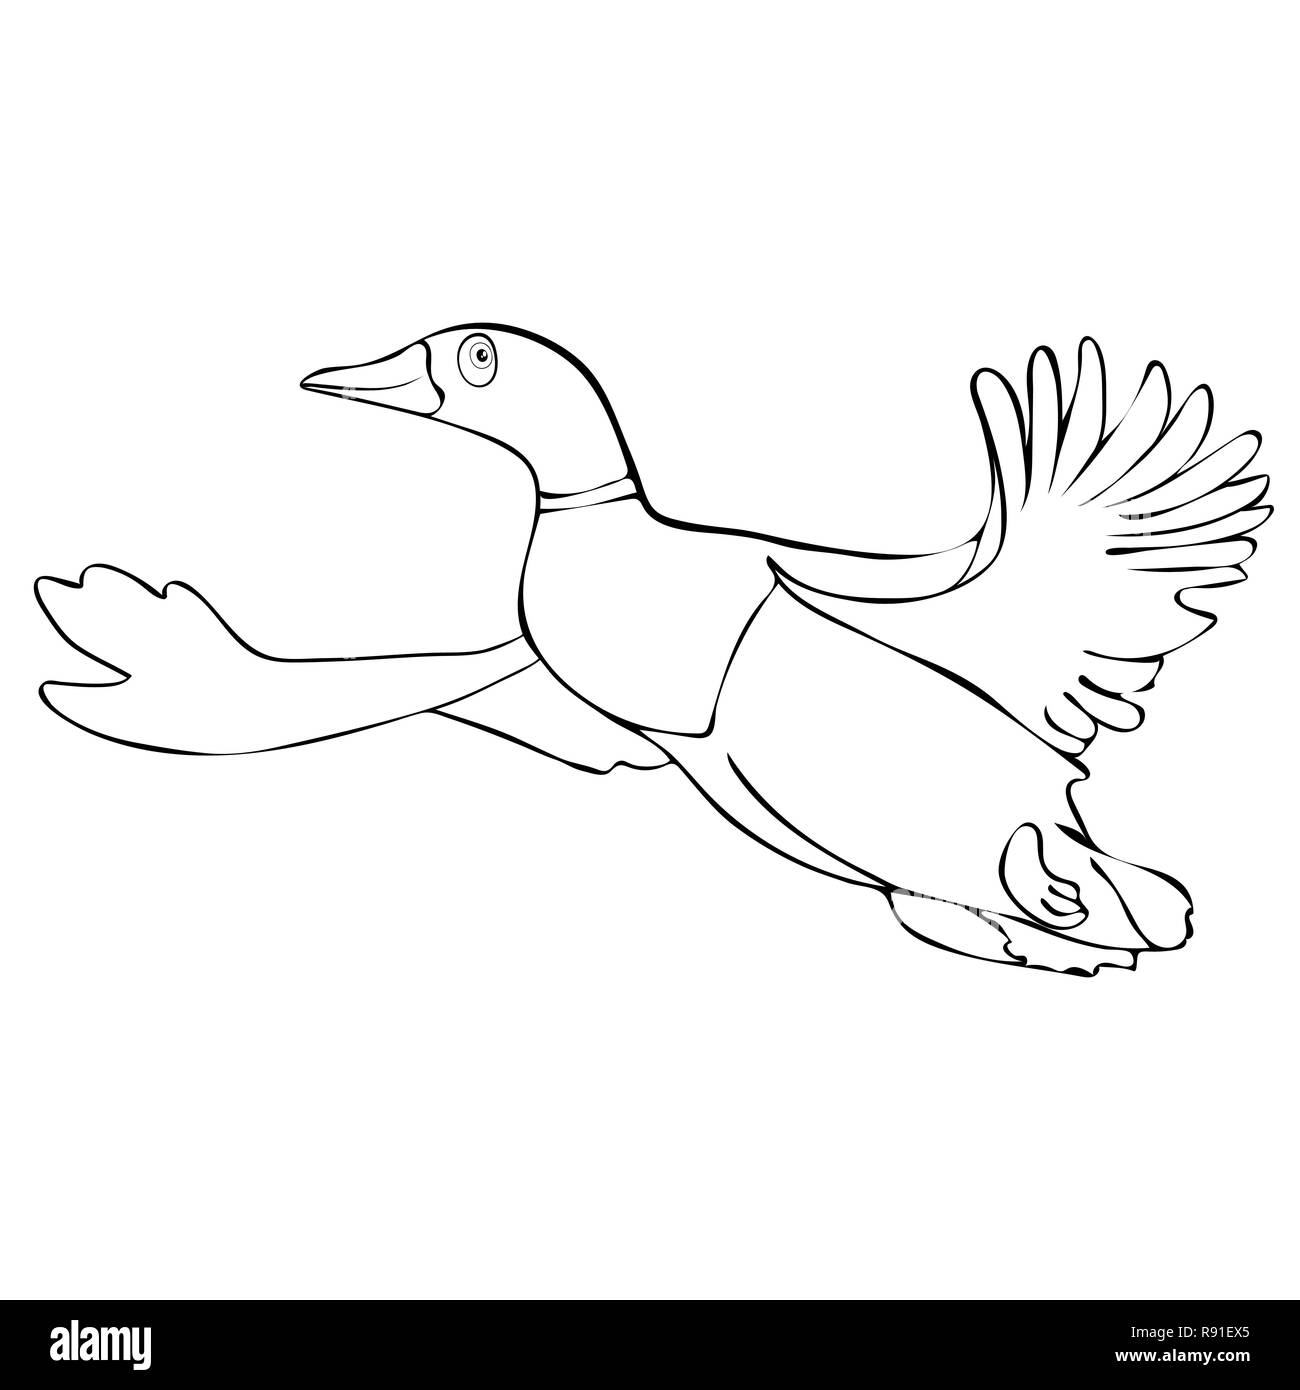 Niedlich lustiger Vogel Ente Drake im Flug lineare hand Zeichnung gemalt, Zeichentrickfigur, Vector schwarz-weiß illustration, Färbung, Skizze, Silhouette Stock Vektor